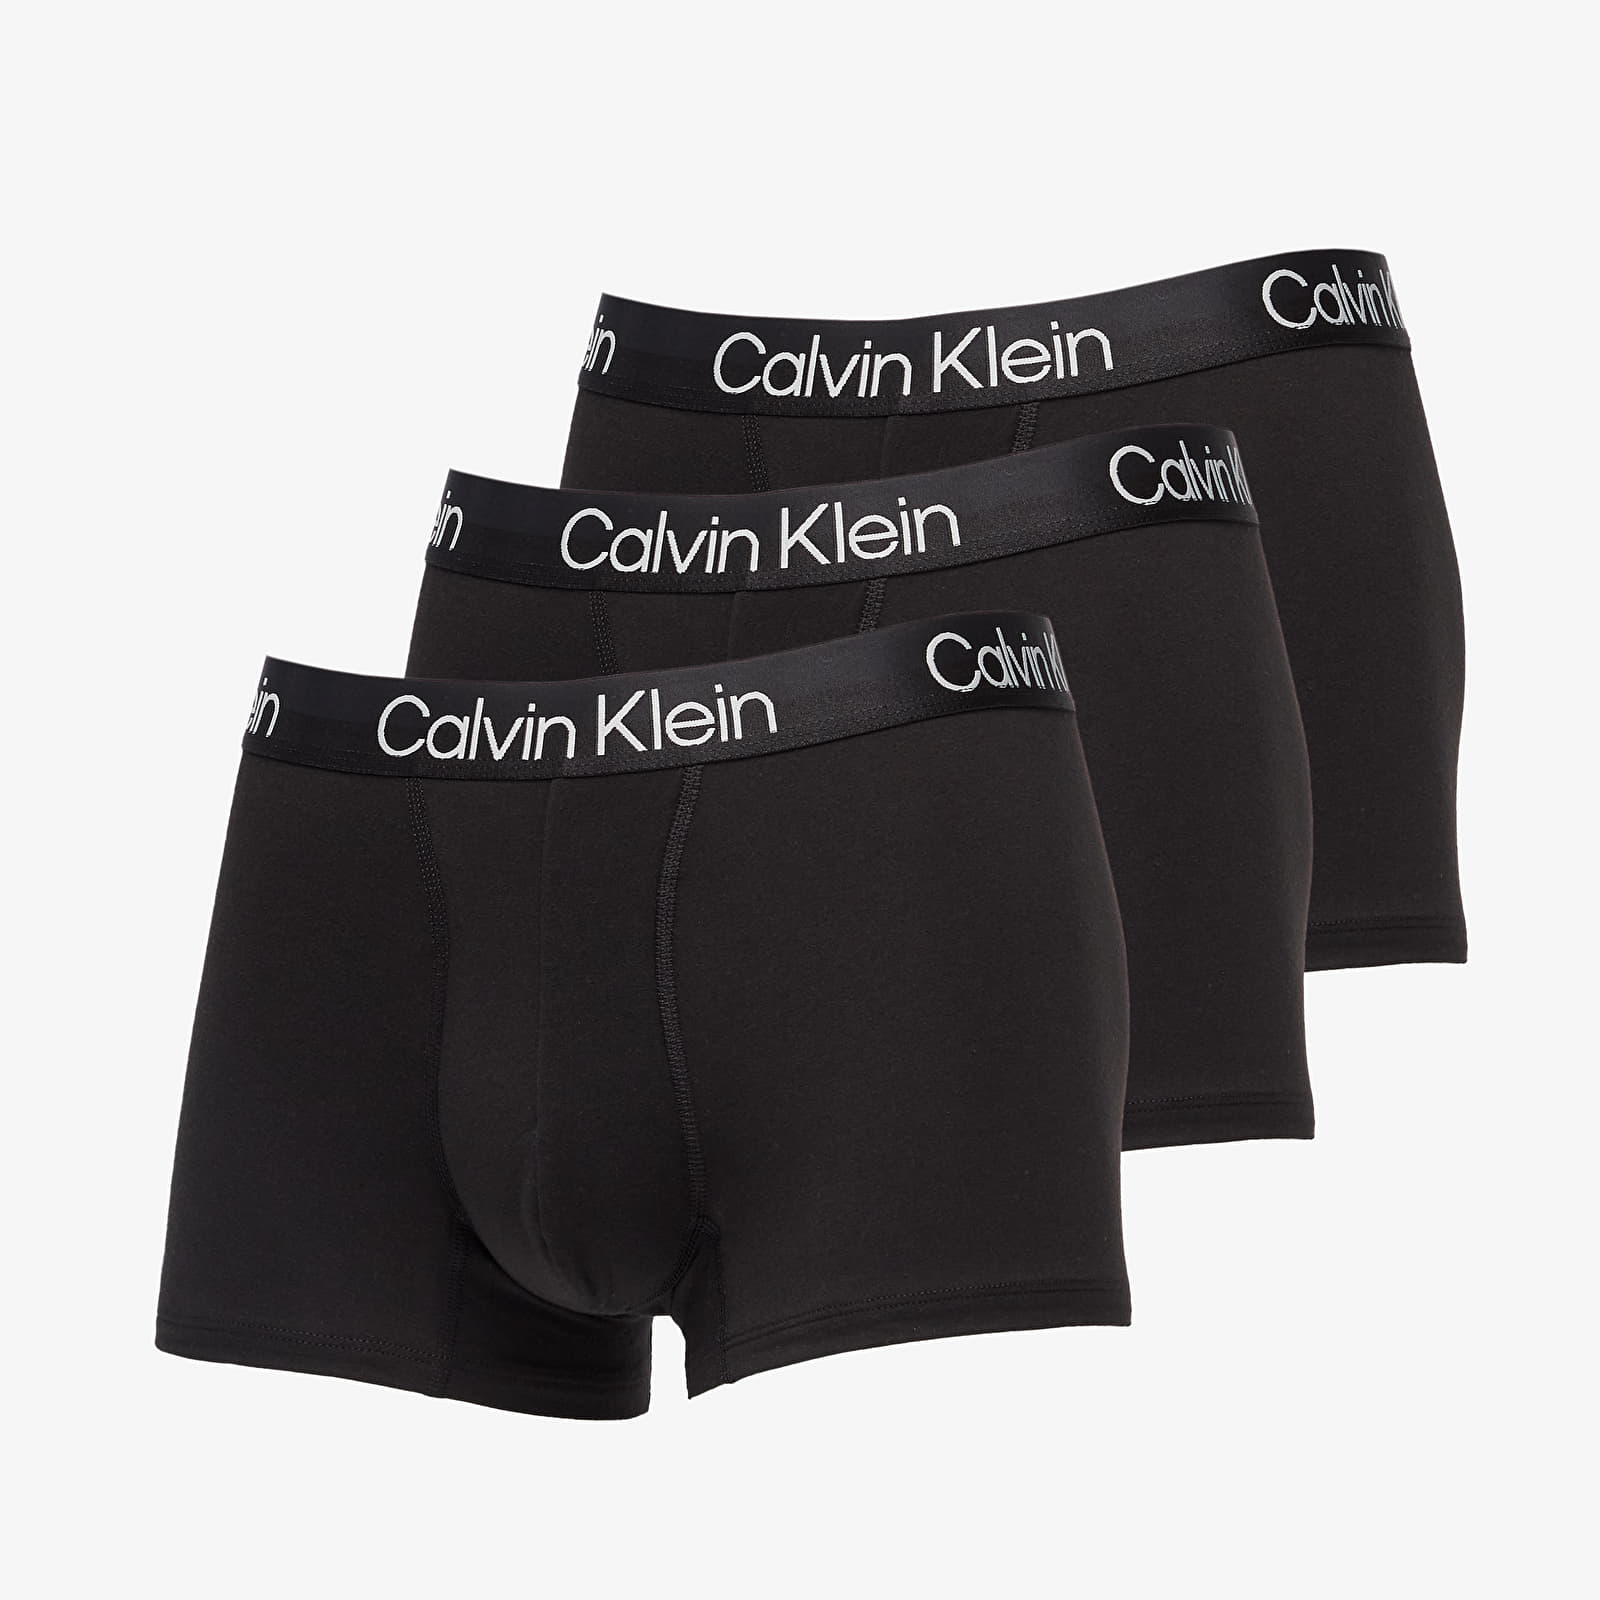 Boxer shorts Calvin Klein Structure Cotton Trunk 3-Pack Black